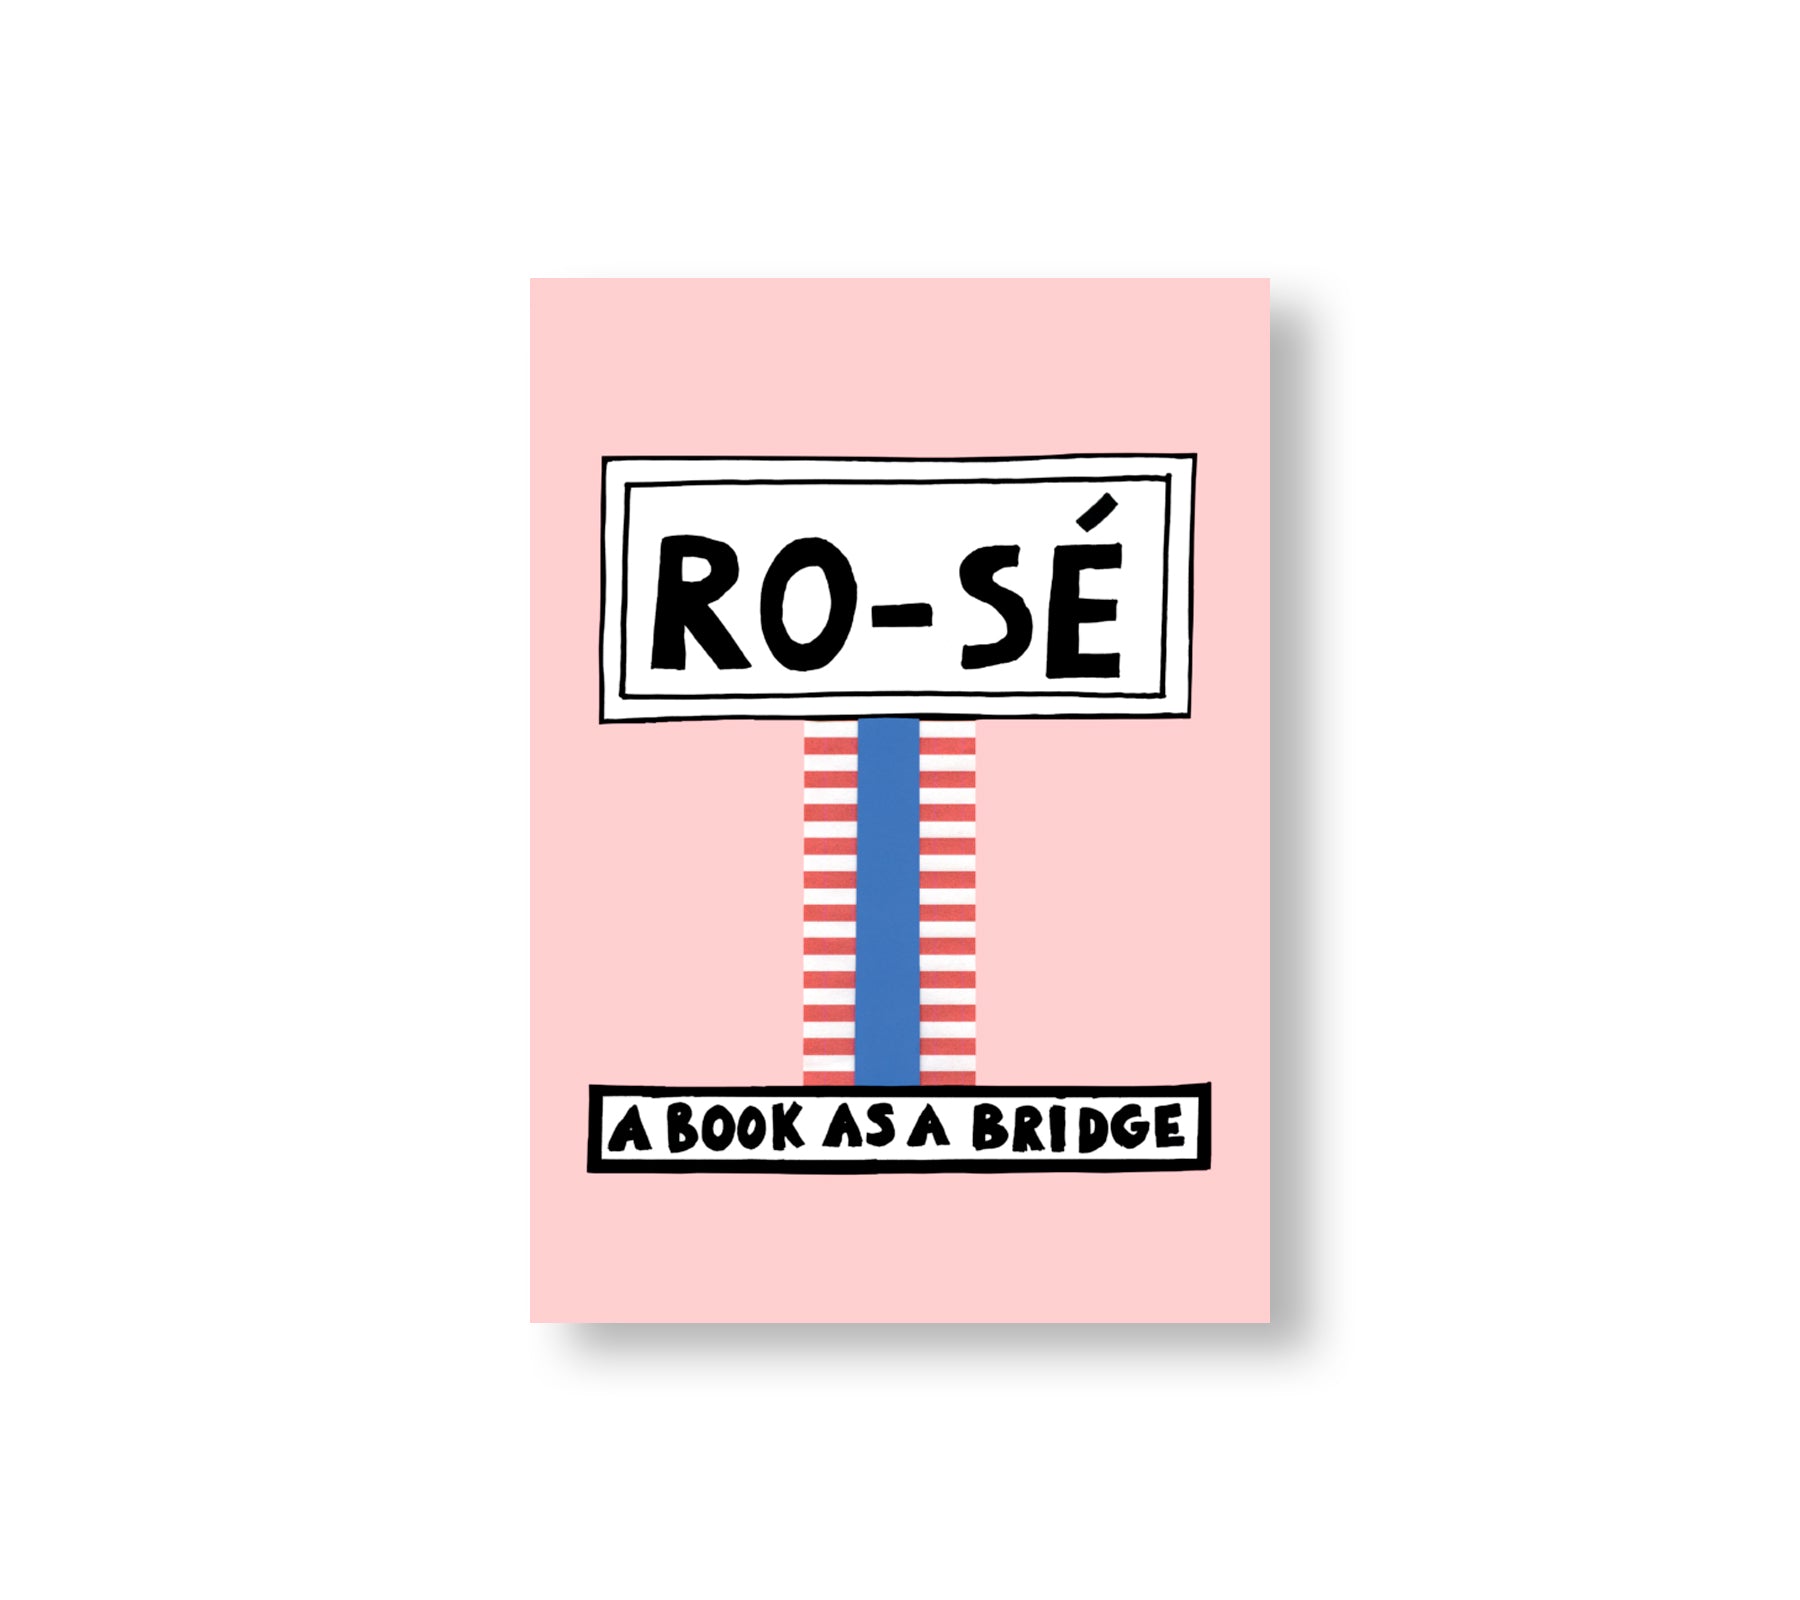 RO-SÉ – A BOOK AS A BRIDGE by Nathalie du Pasquier